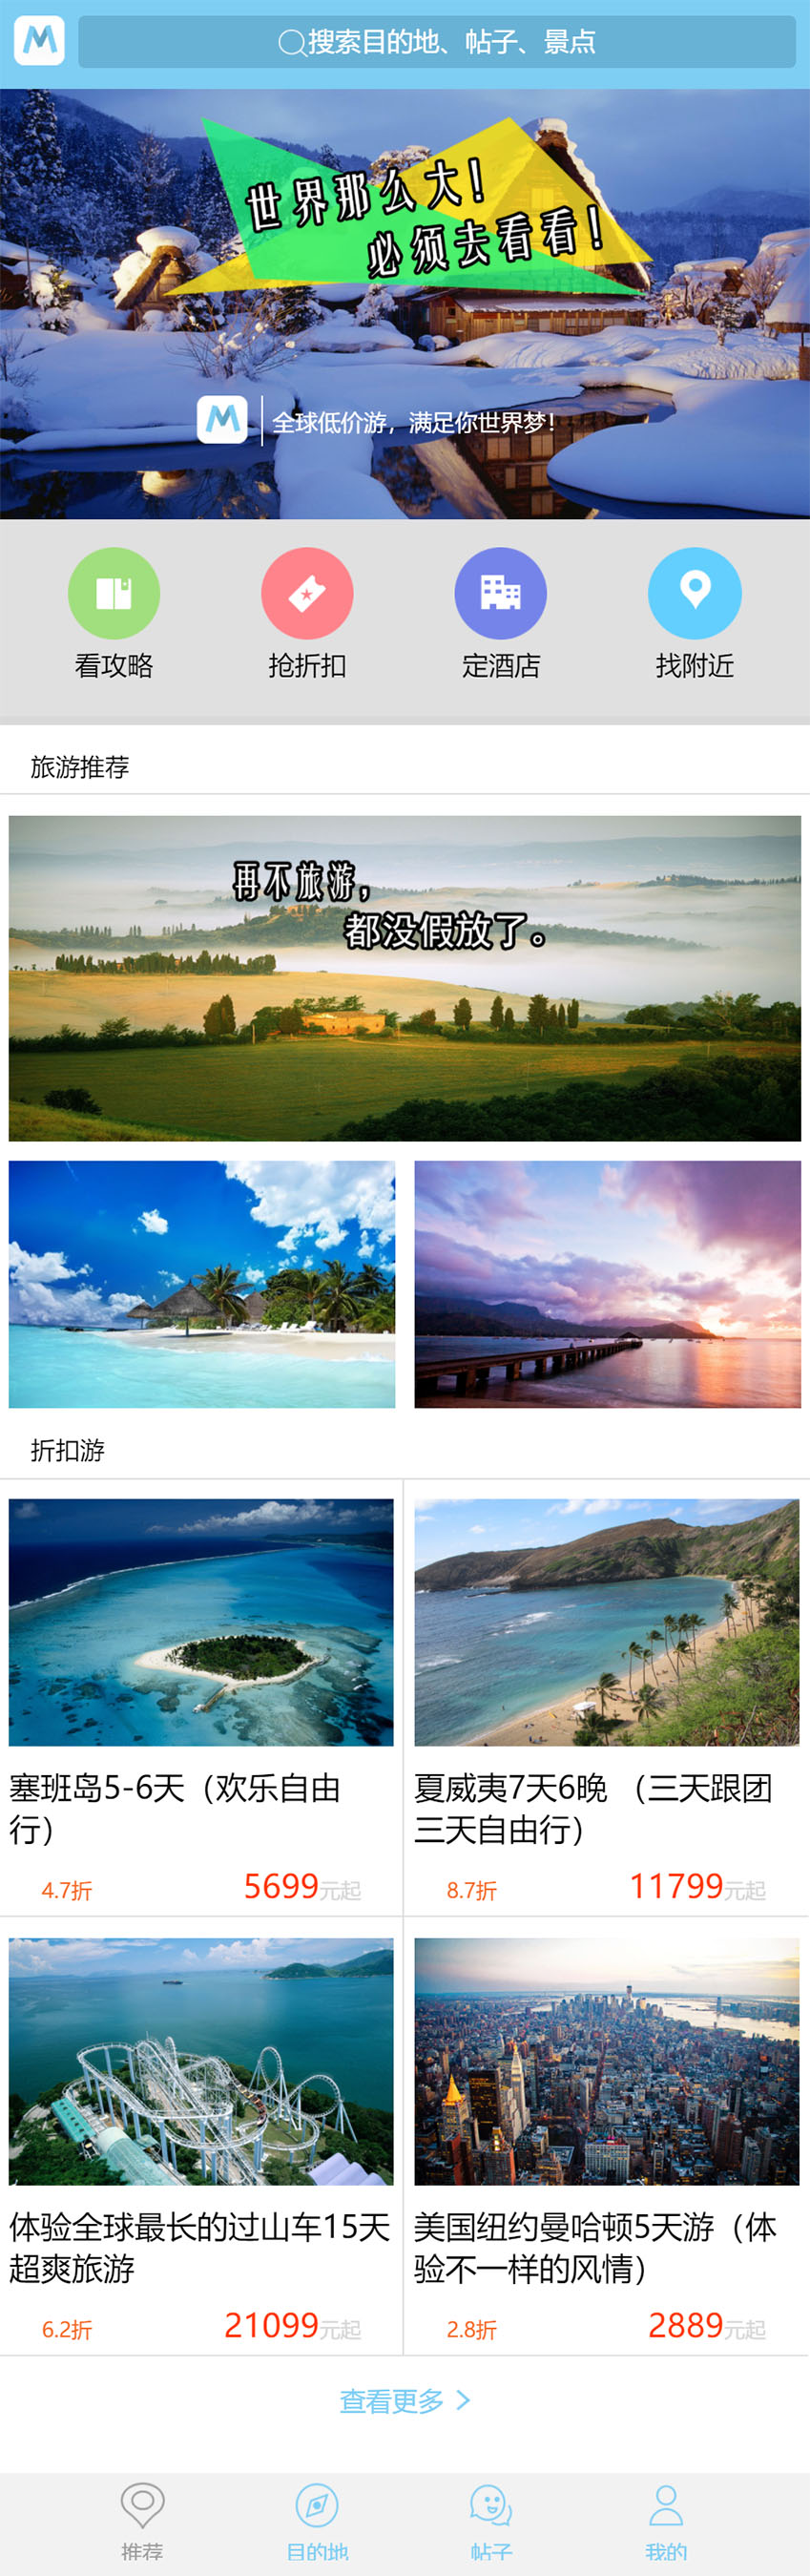 免费旅游行业门户网站手机网站html模板